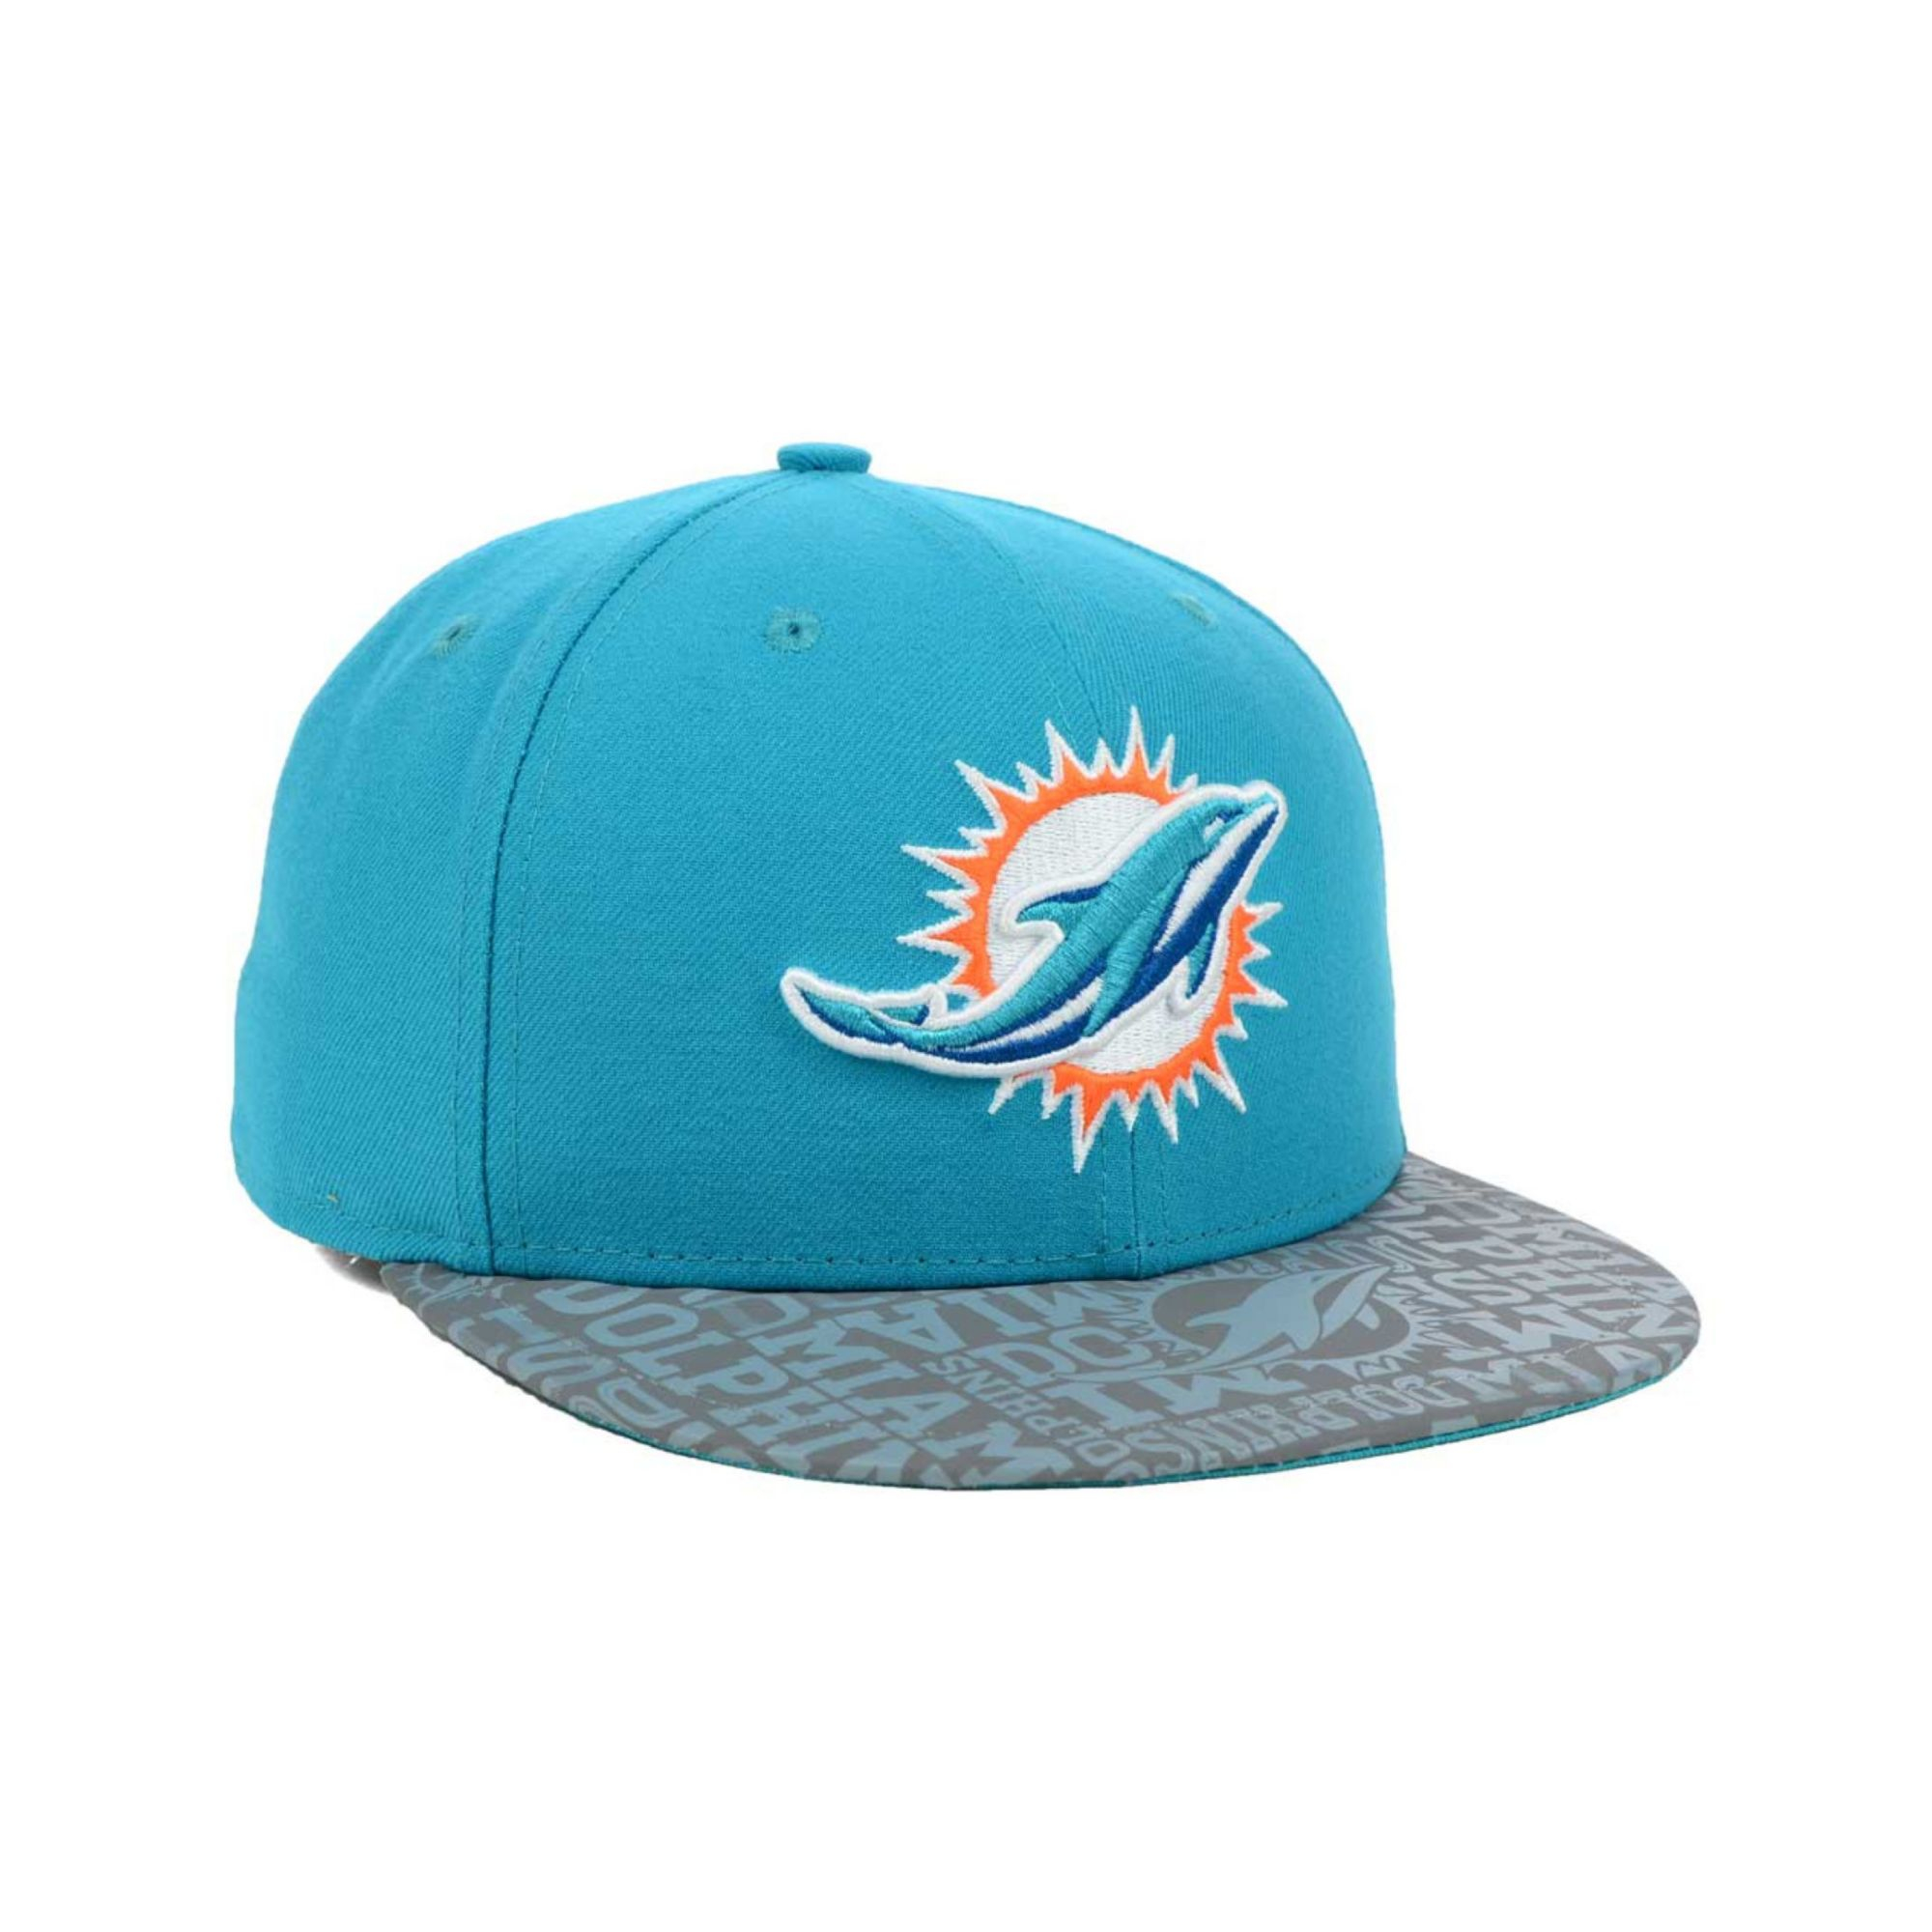 New era Miami Dolphins Nfl Draft 59fifty Cap in Blue for Men (Aqua/Gray